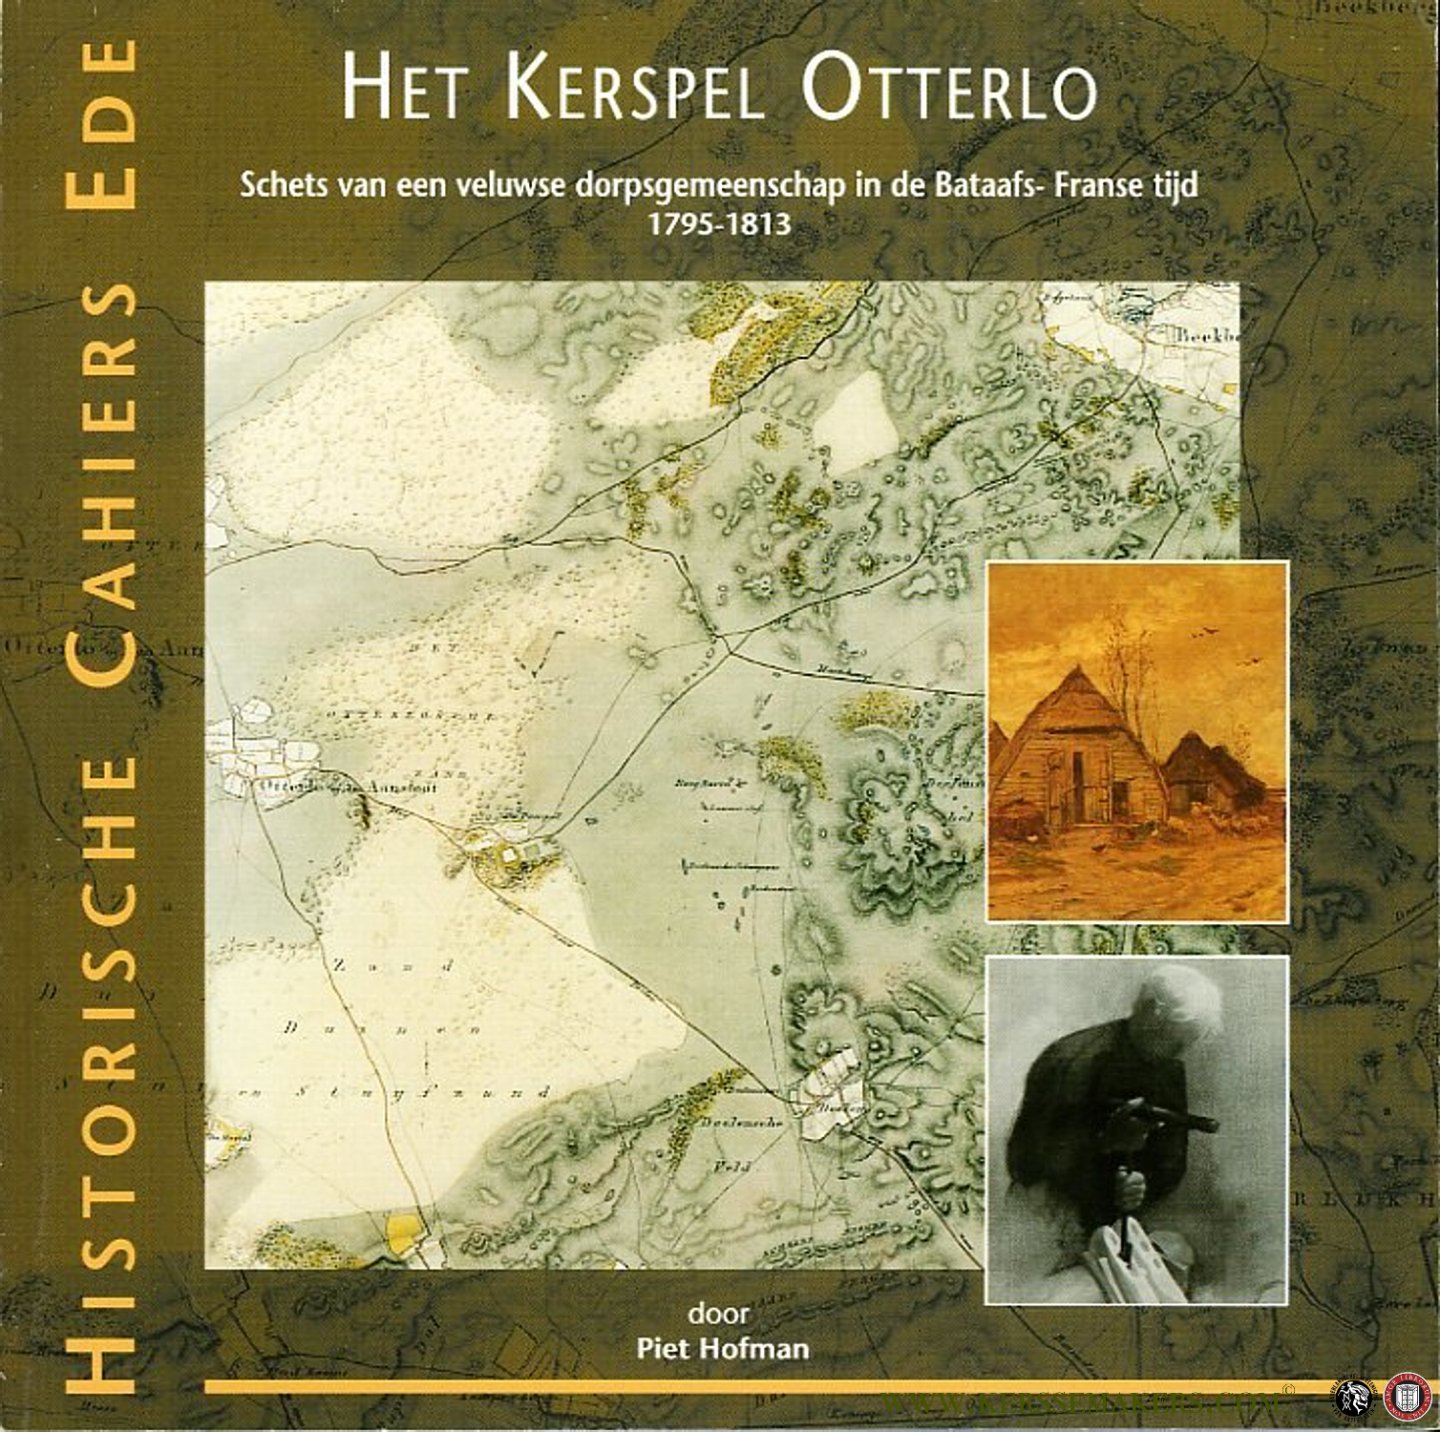 HOFMAN, Piet - Het Kerspel Otterlo. Schets van een veluwse dorpsgmeenschap in de Bataafs-Franse tijd 1795-1813